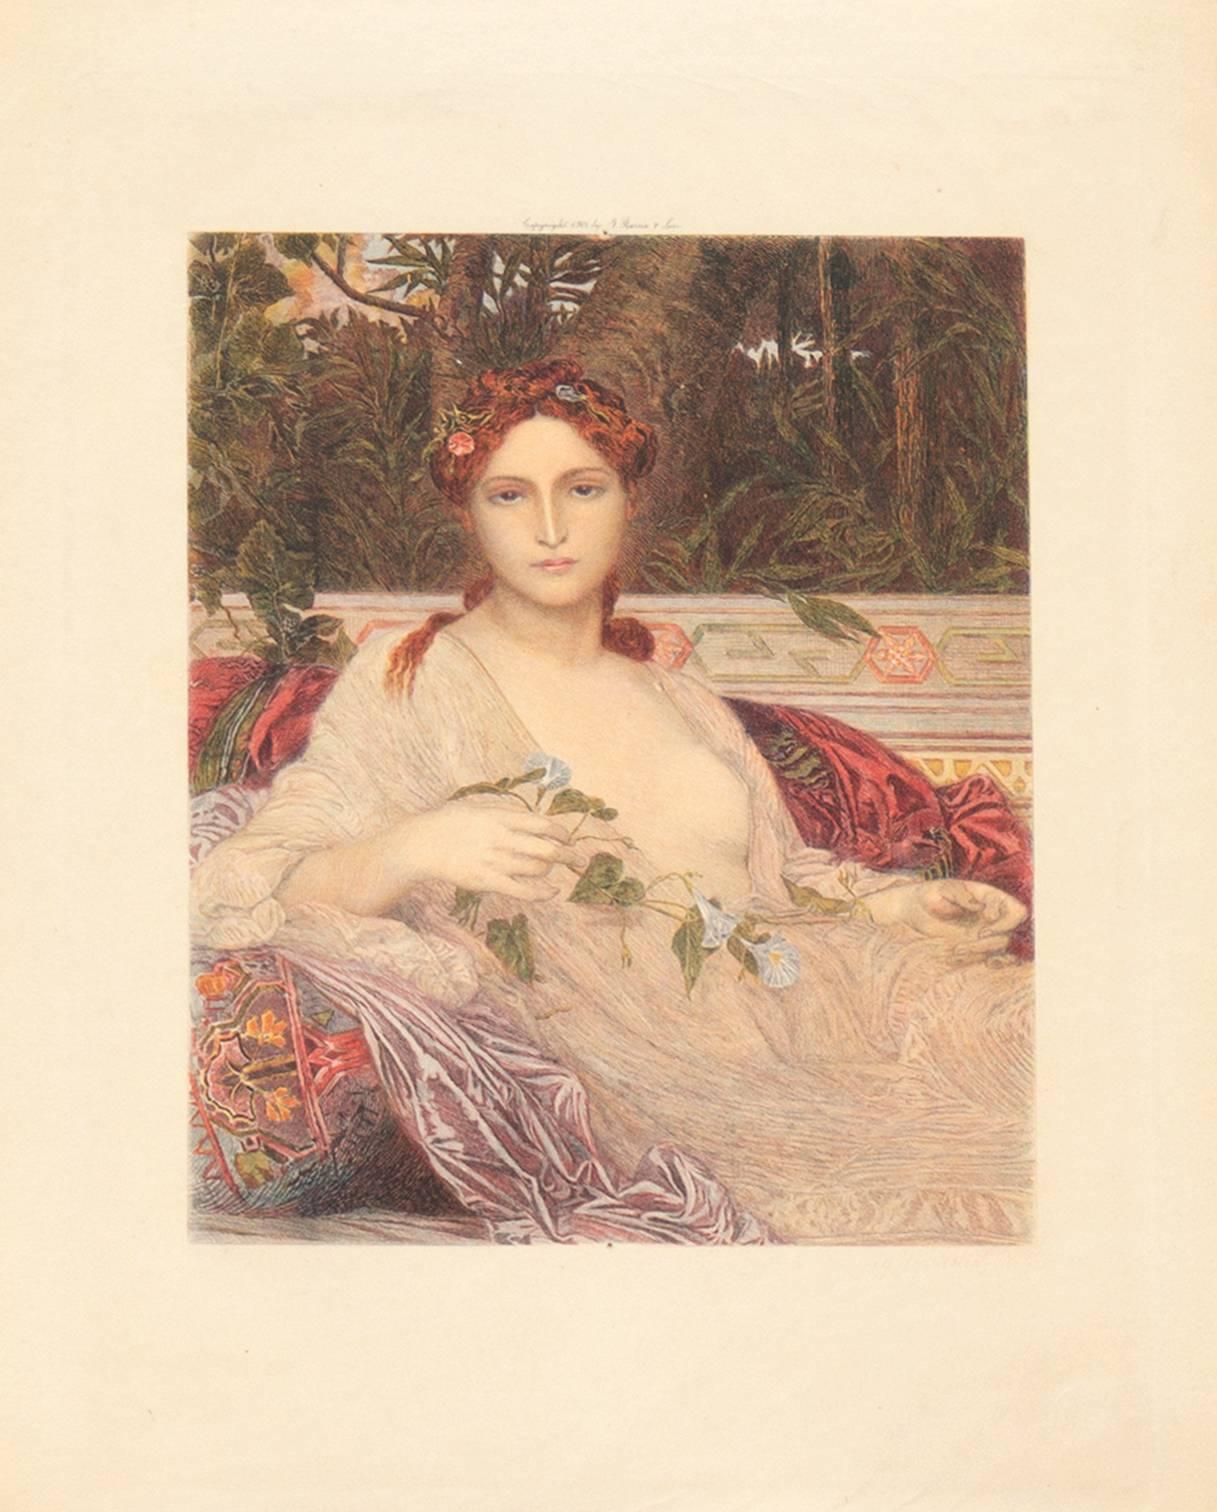 'Albaydé', Paris Salon, Prix de Rome, Ecole des Beaux-Arts  - Print by Alexandre Cabanel